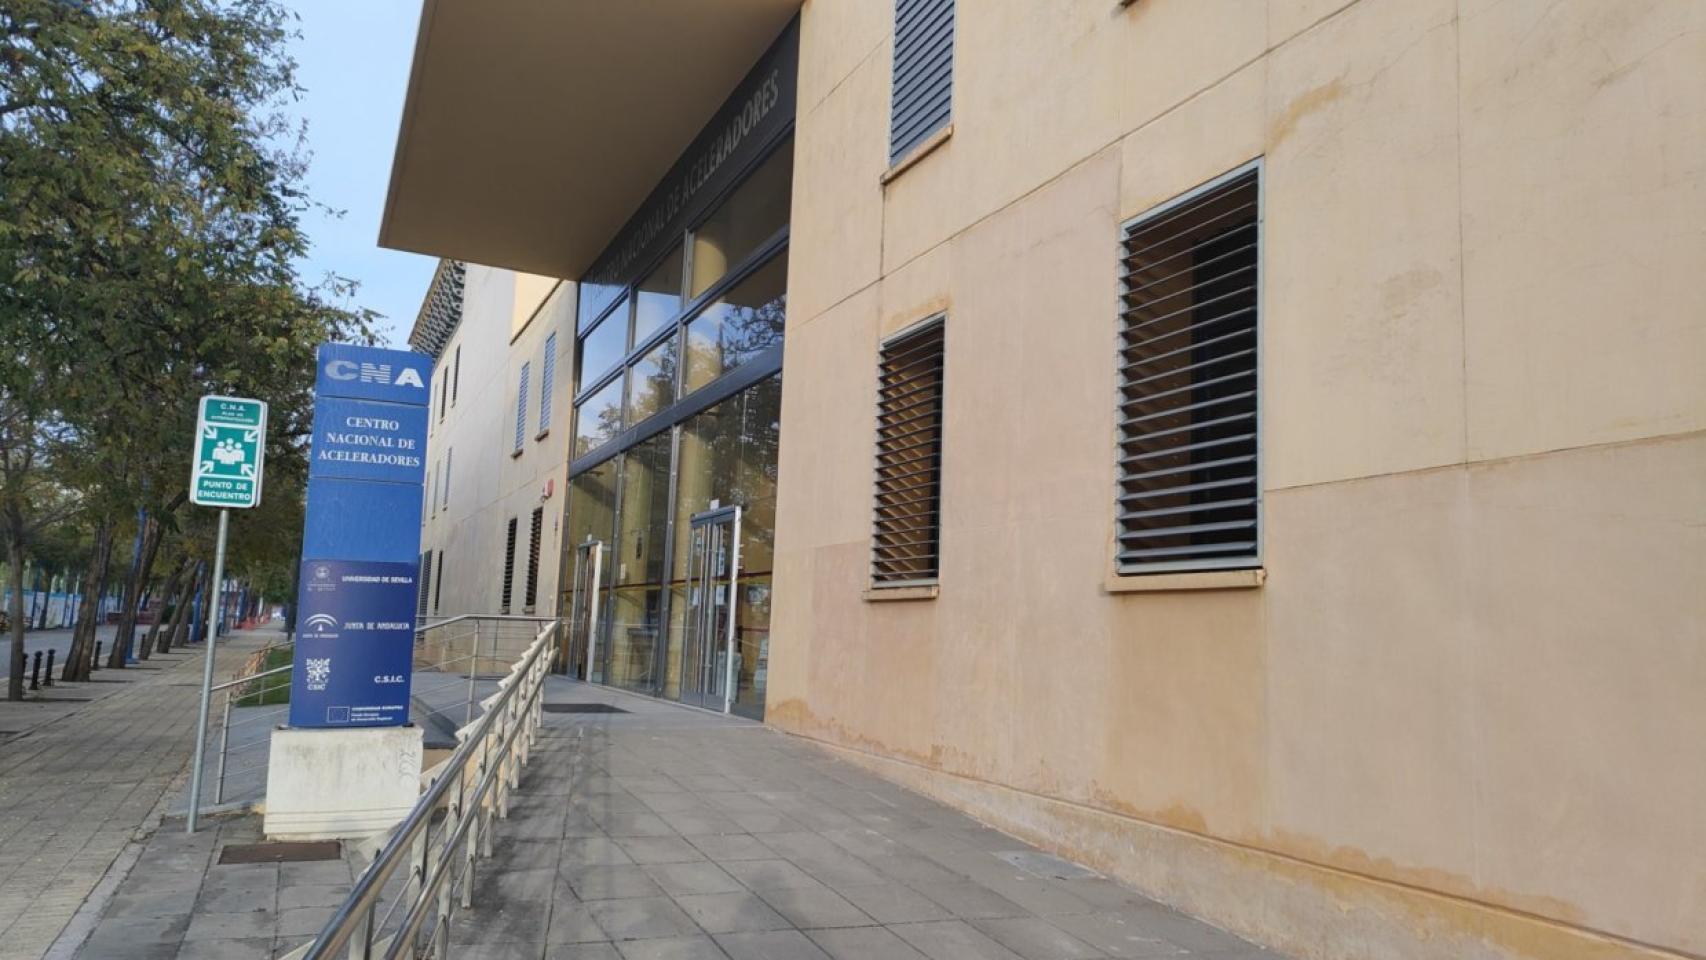 El exterior del Centro Nacional de Aceleradores, en Sevilla.